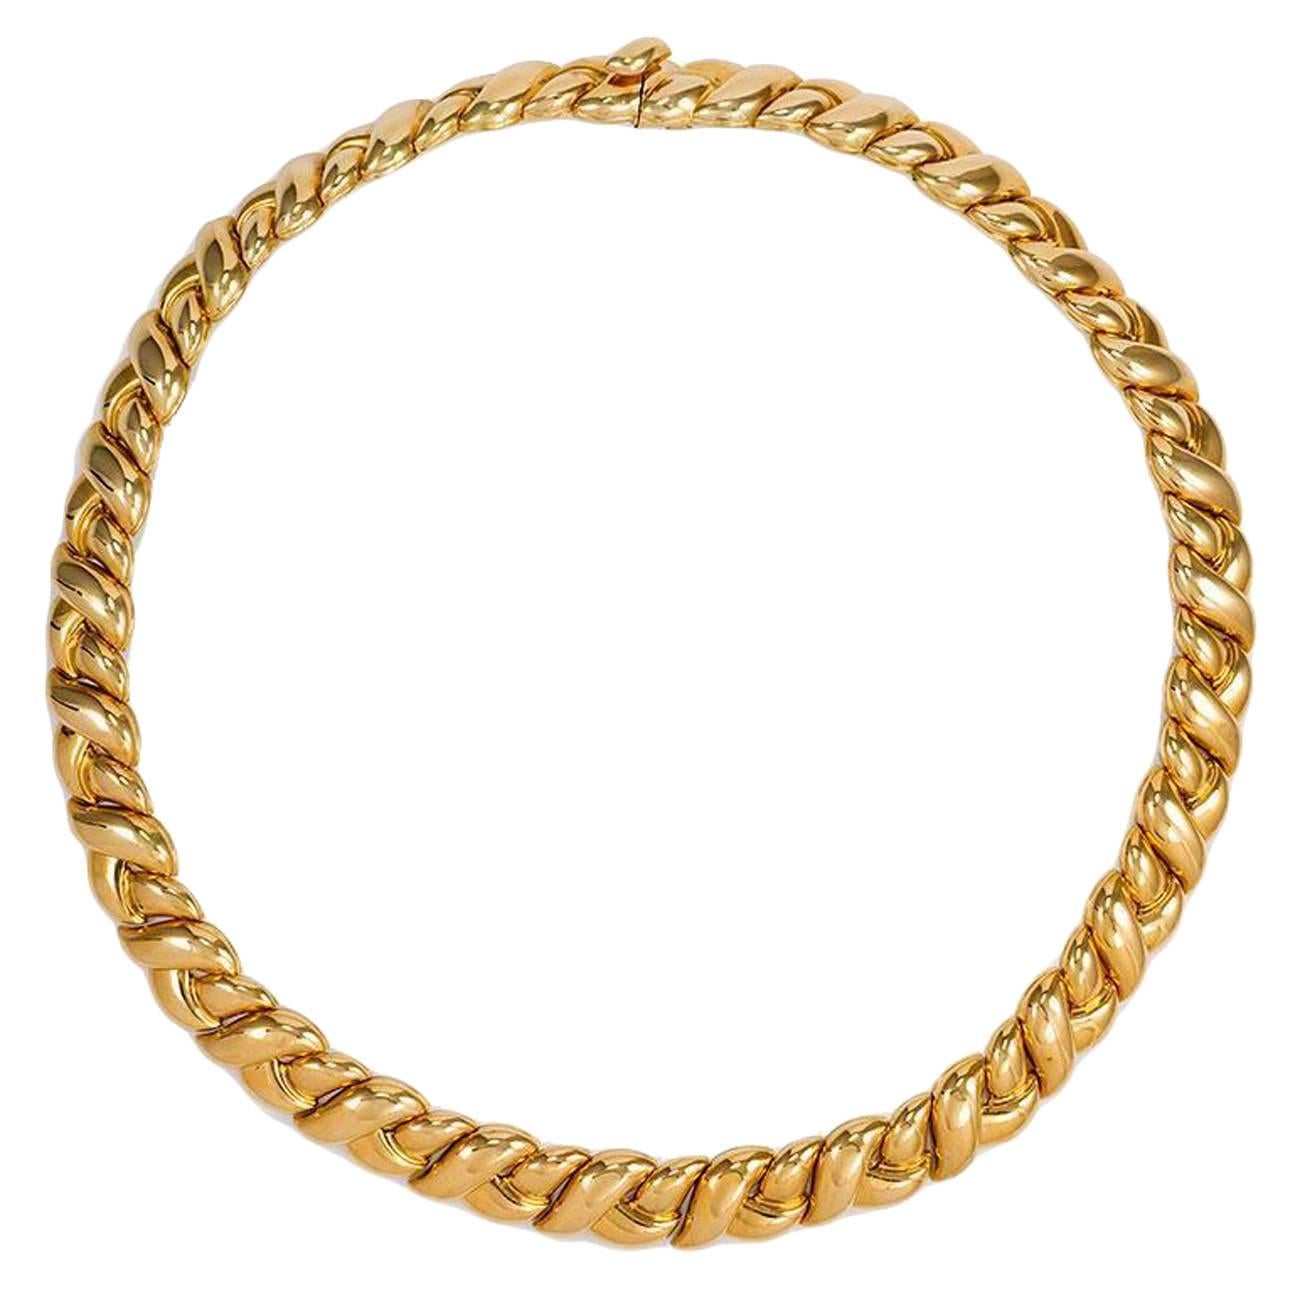 Van Cleef & Arpels Gold Braided Collar Necklace